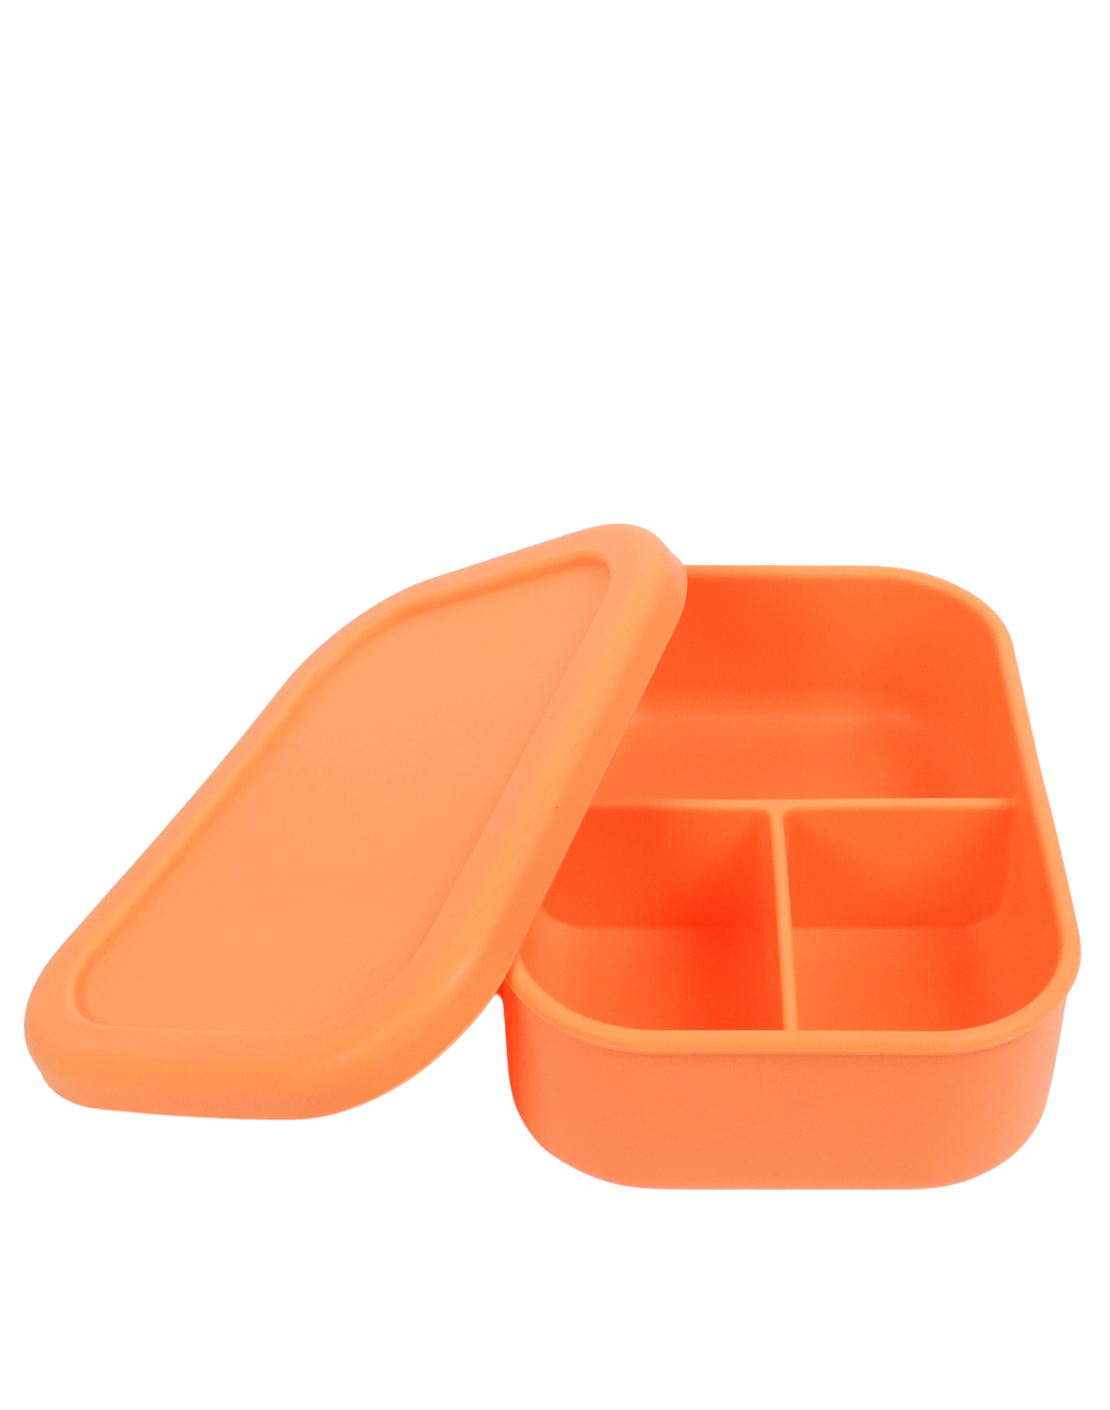 Plungerman - Sole Plunger Bento Lunch Box